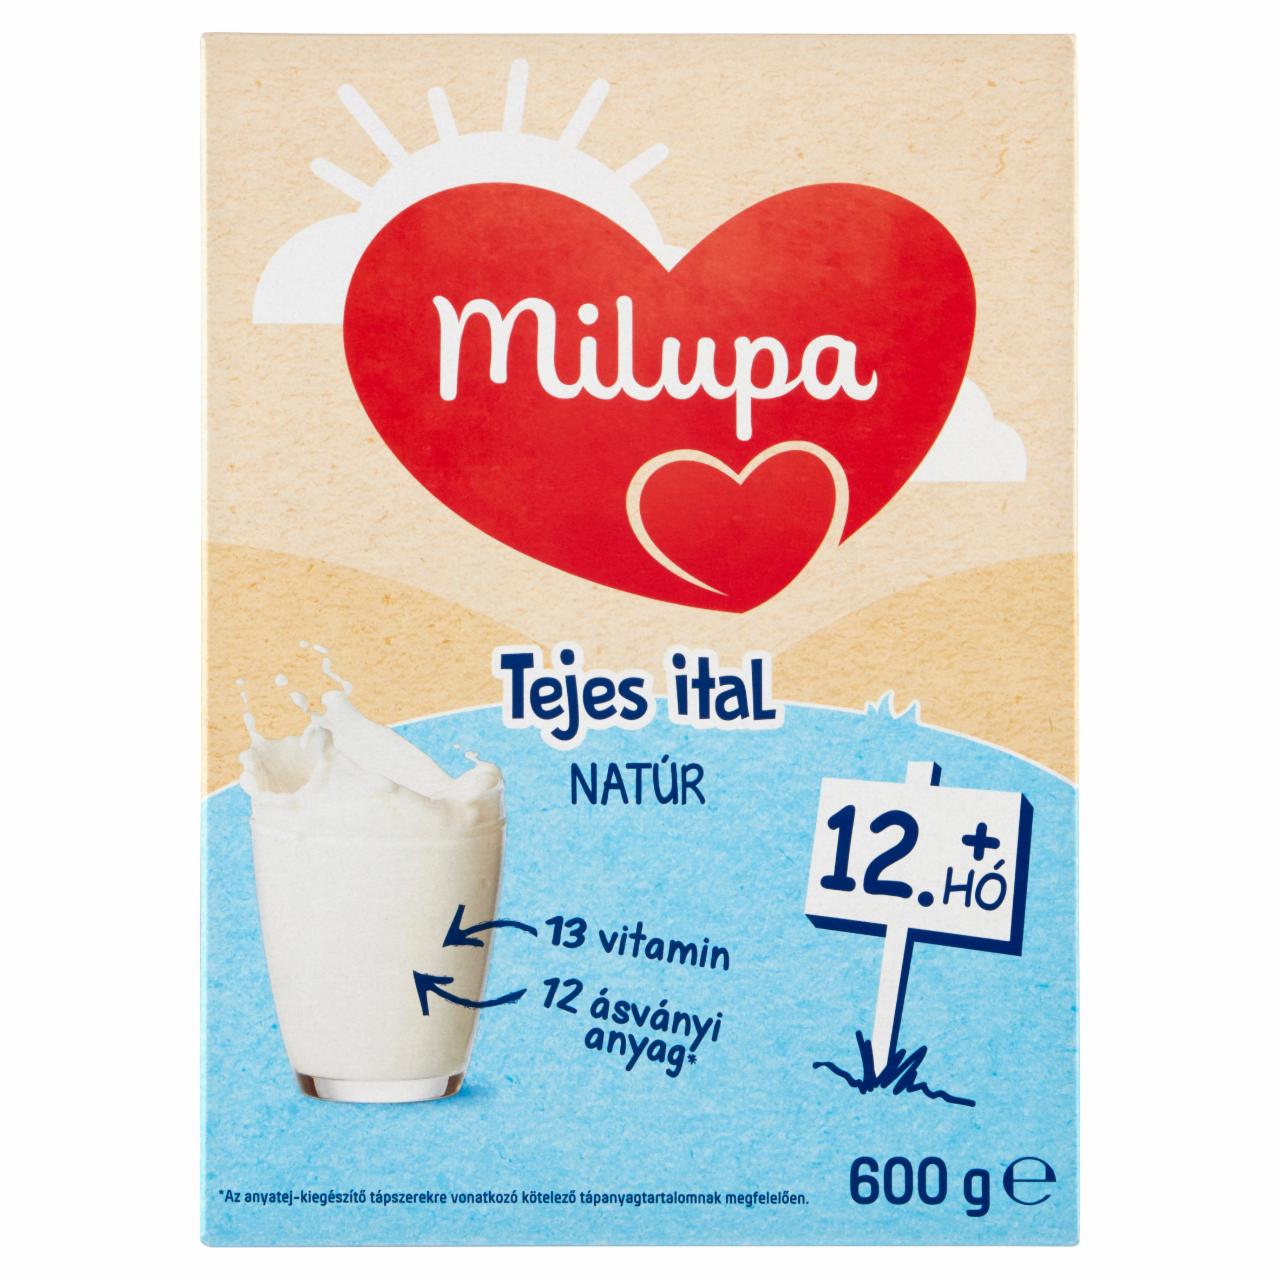 Képek - Milupa natúr tejes ital tejalapú anyatej-kiegészítő tápszer 12. hónapos kortól 600 g